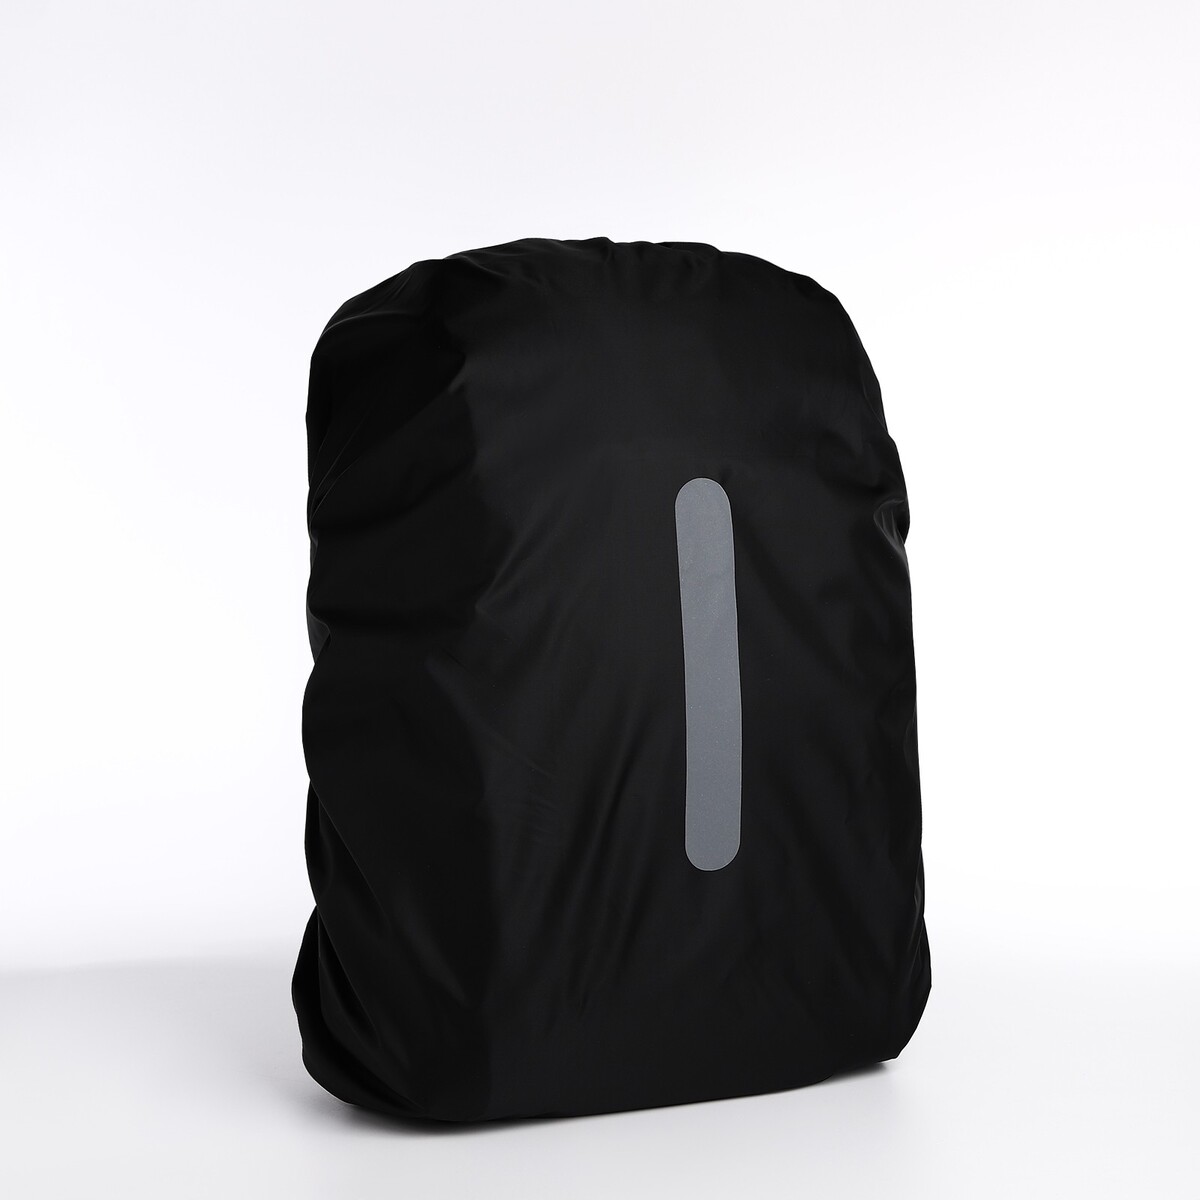 Чехол на рюкзак водоотталкивающий, объем 80 л, цвет черный